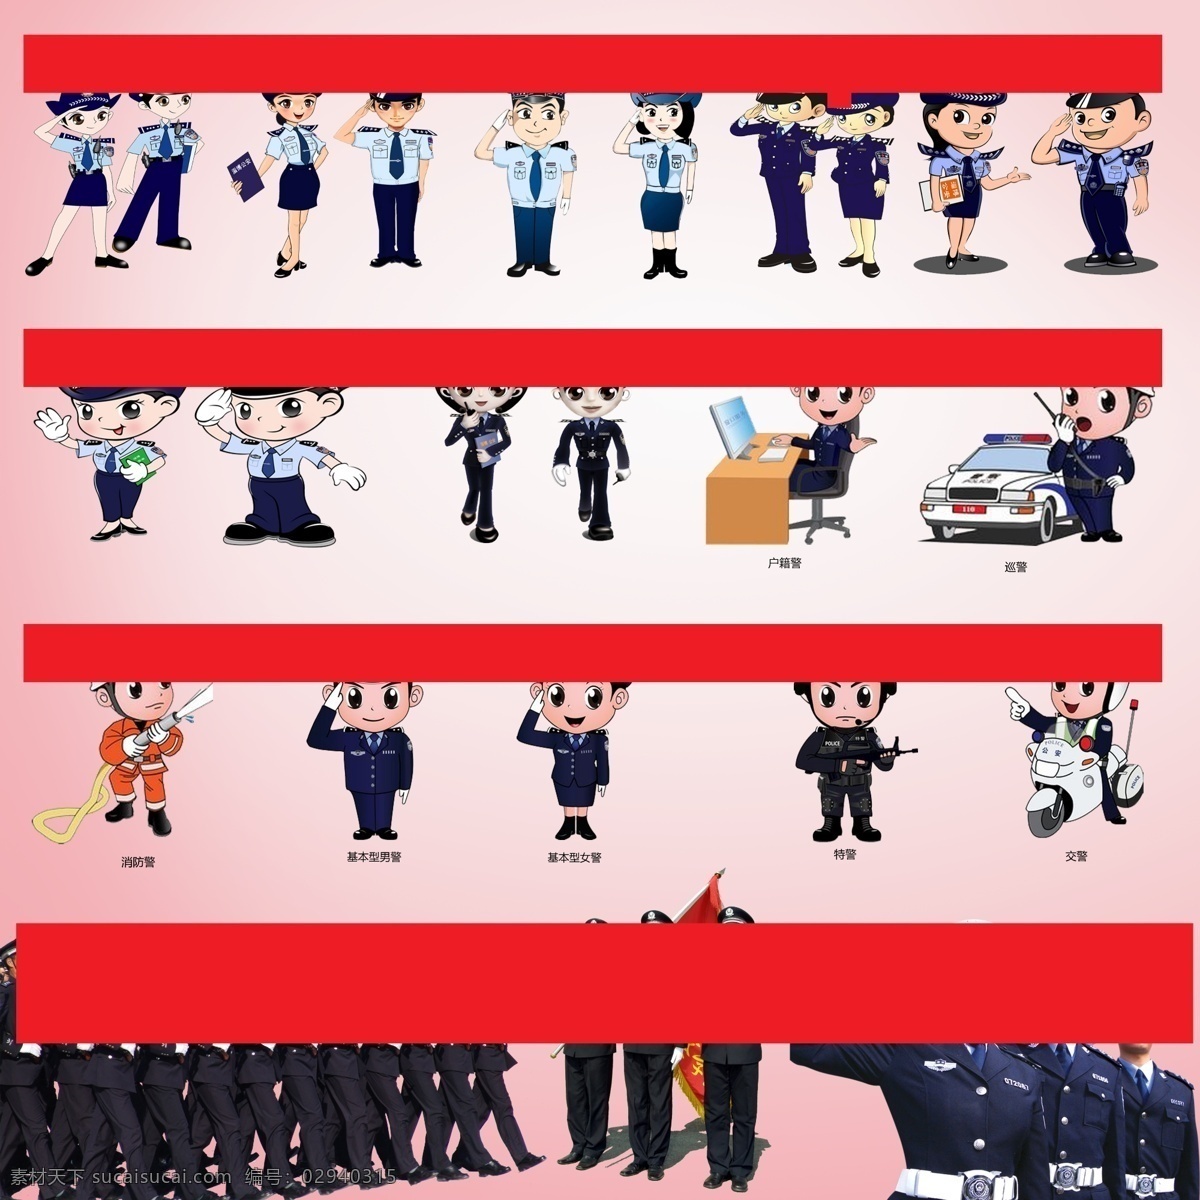 卡通 公安 警察 形象设计 卡通警察 卡通人物 矢量 矢量人物 职业 民警 矢量图